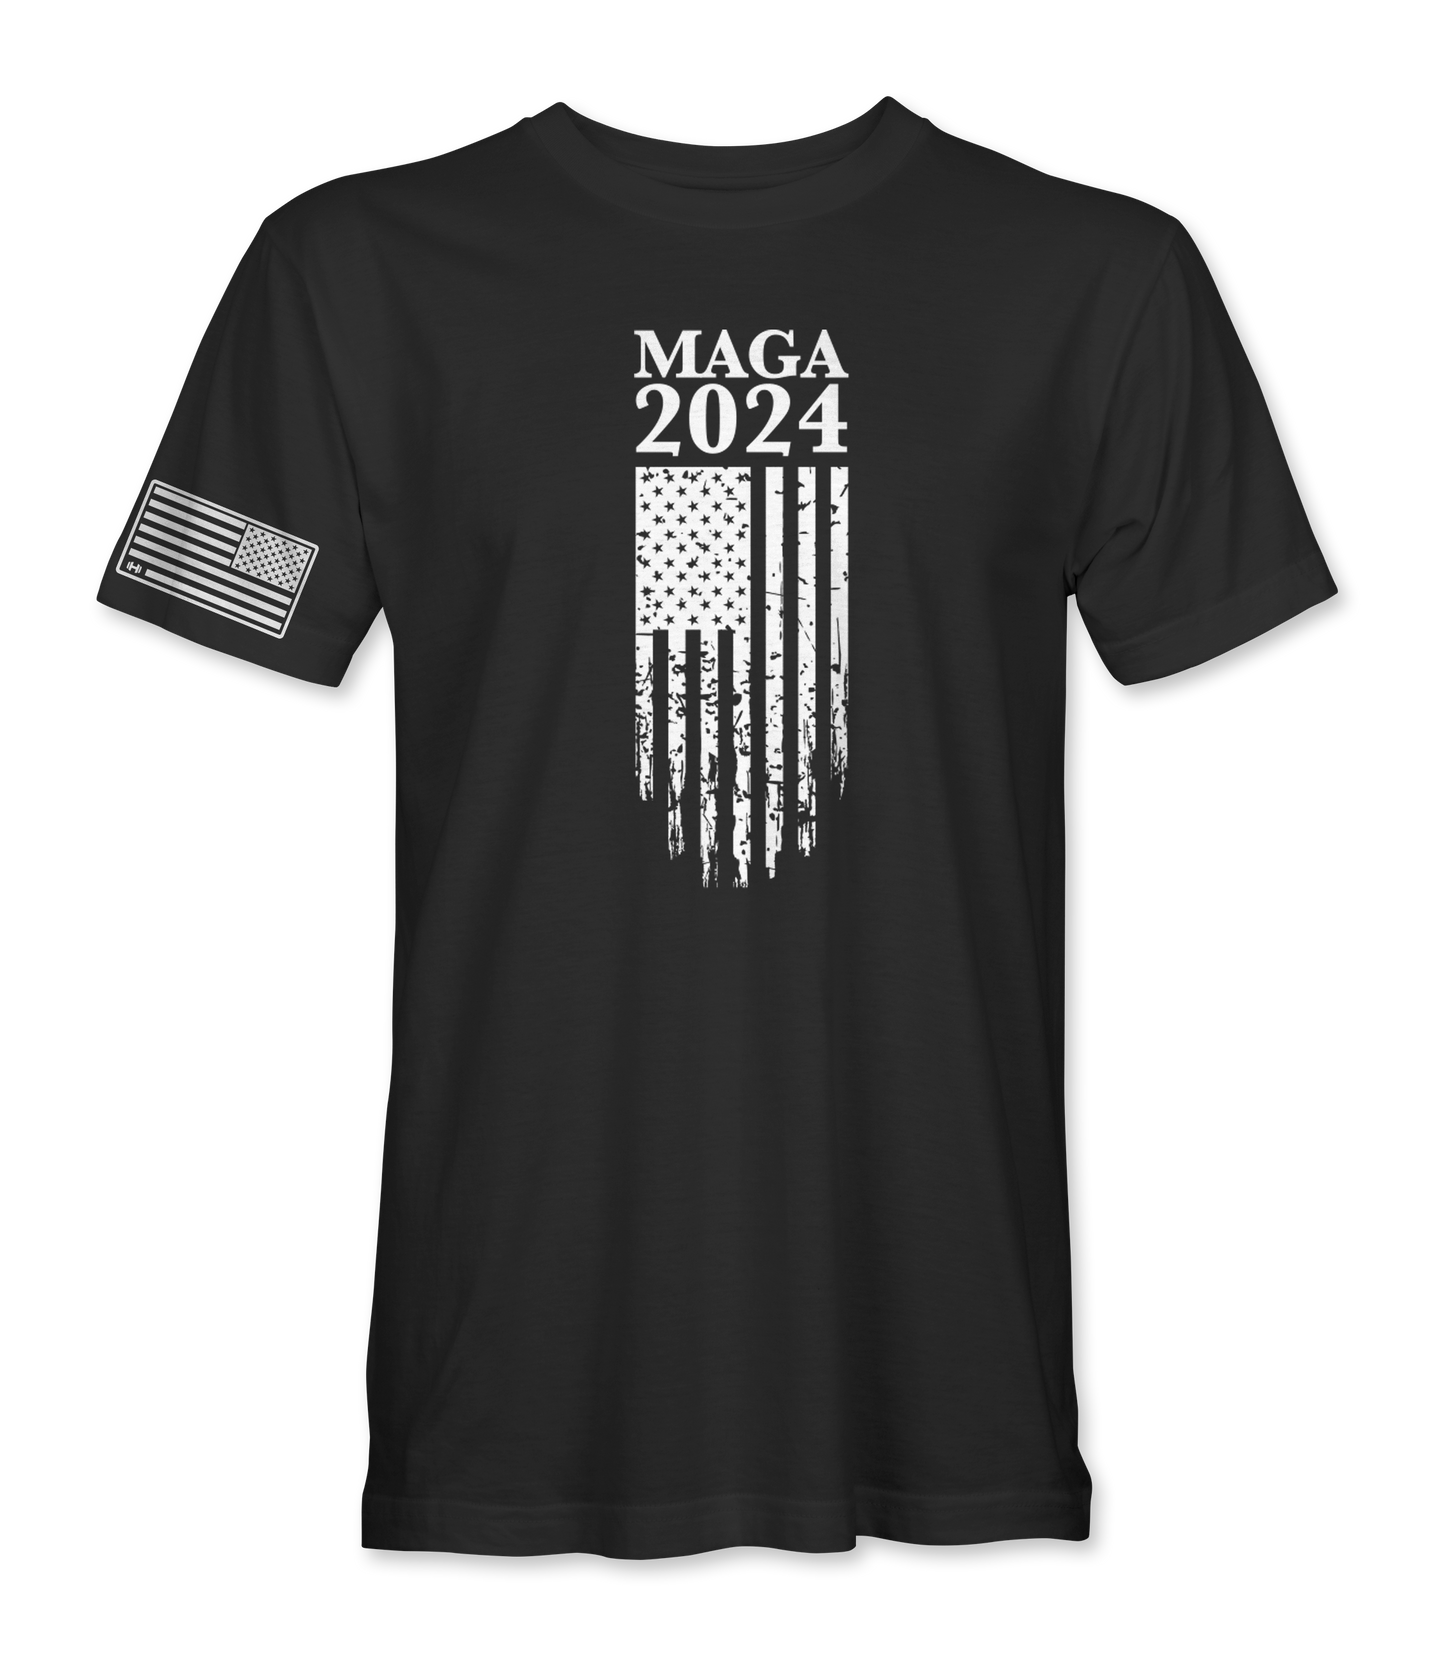 MAGA 2024 T-Shirt